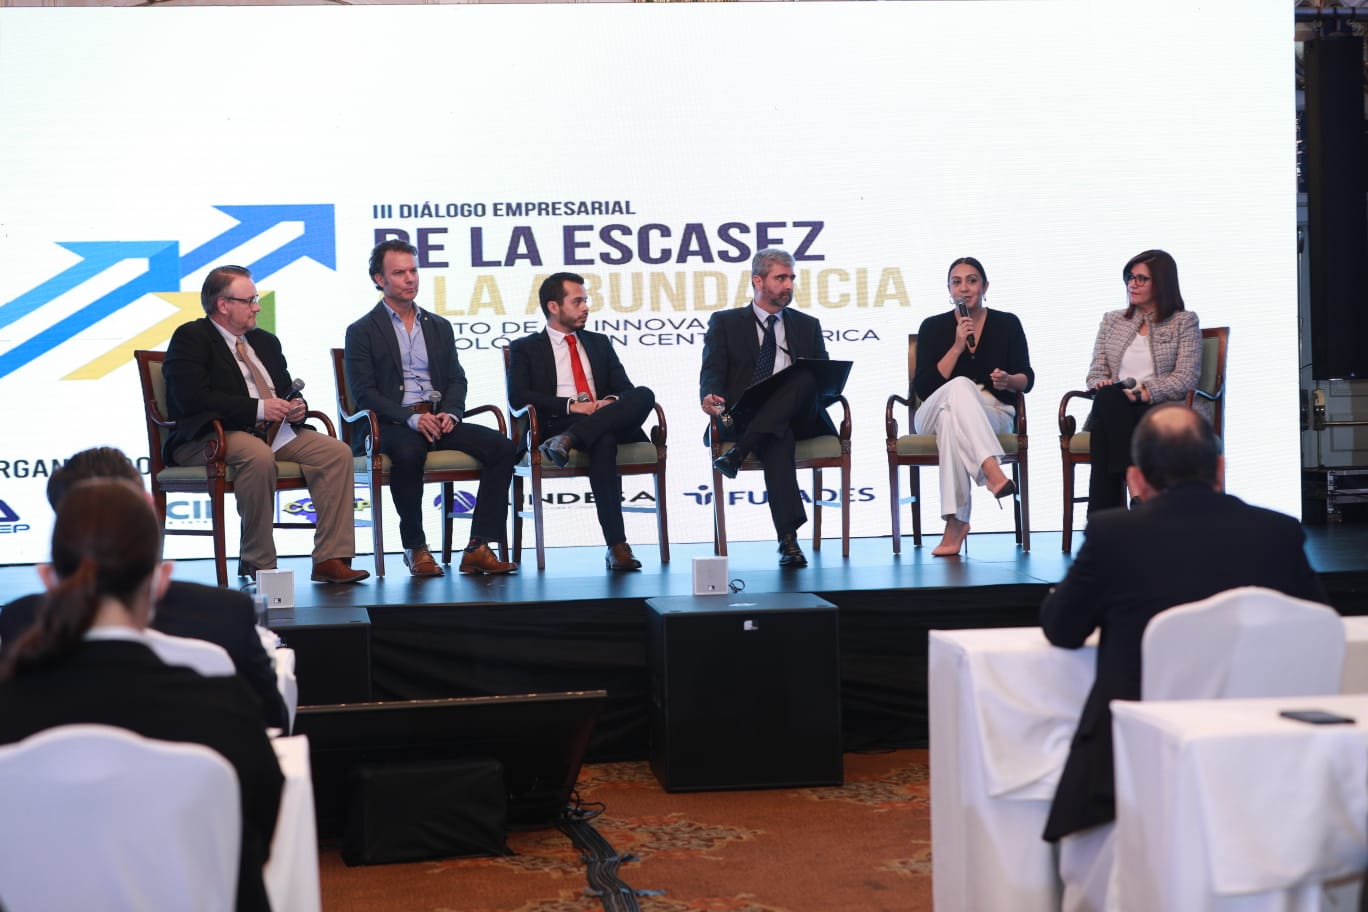 Empresarios, ponentes y emprendedores de Guatemala, El Salvador y Honduras celebraron el III Diálogo Empresarial 2022, “De la escasez a la abundancia. El reto de la innovación tecnológica en Centroamérica”. (Foto Prensa Libre).